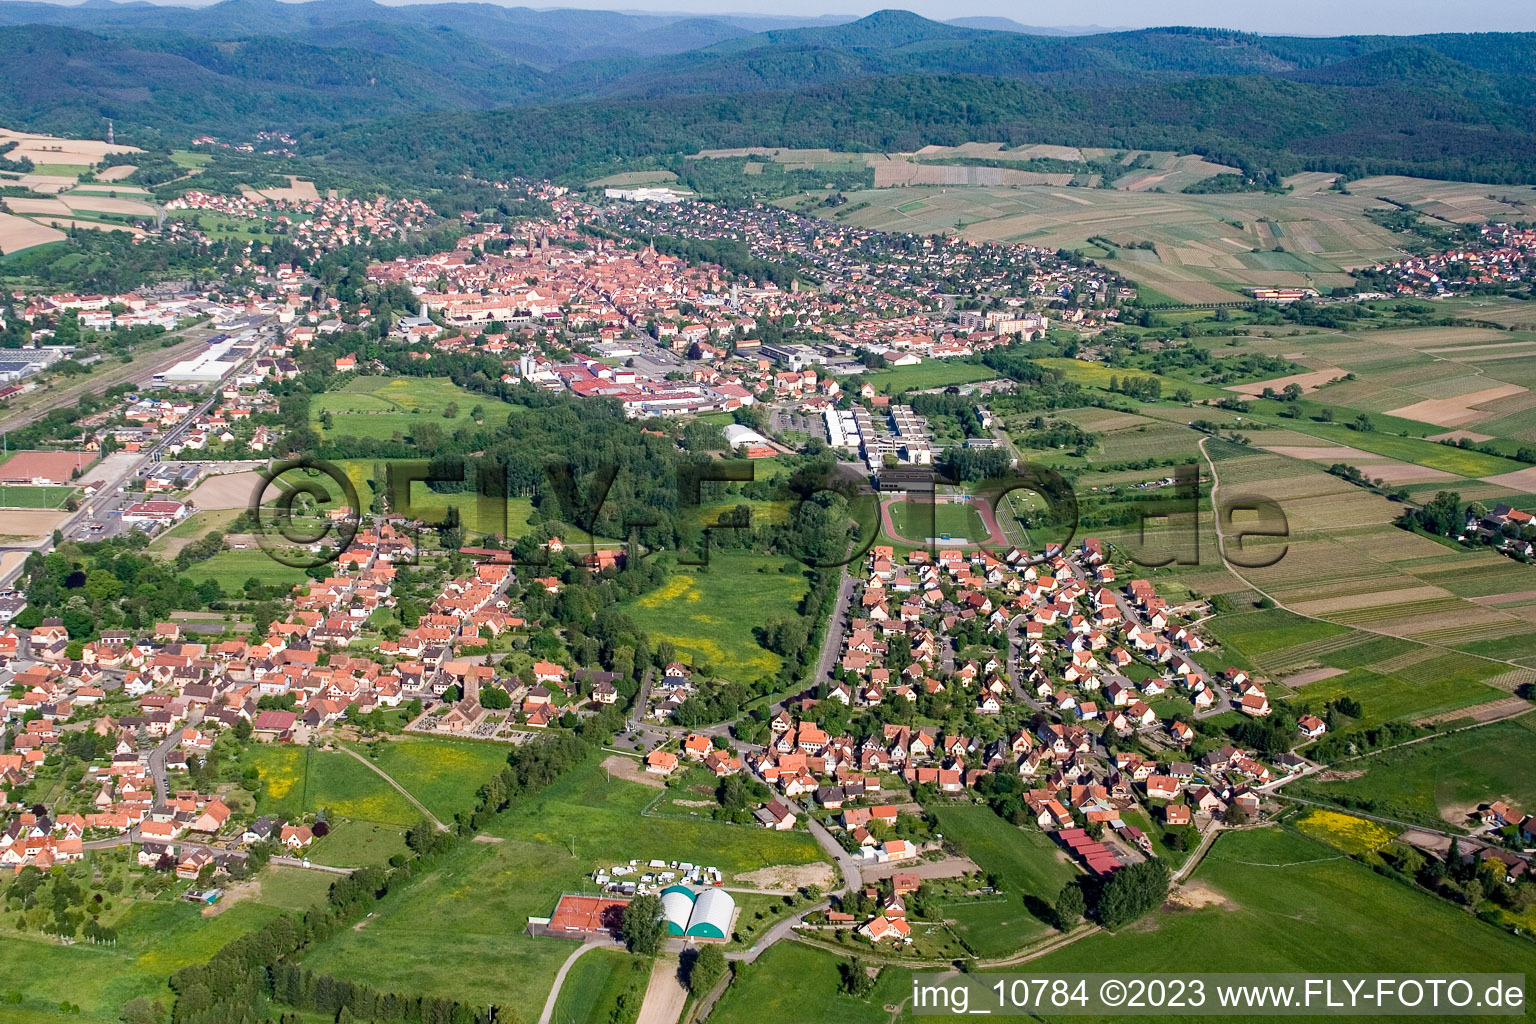 Altenstadt im Bundesland Bas-Rhin, Frankreich aus der Luft betrachtet